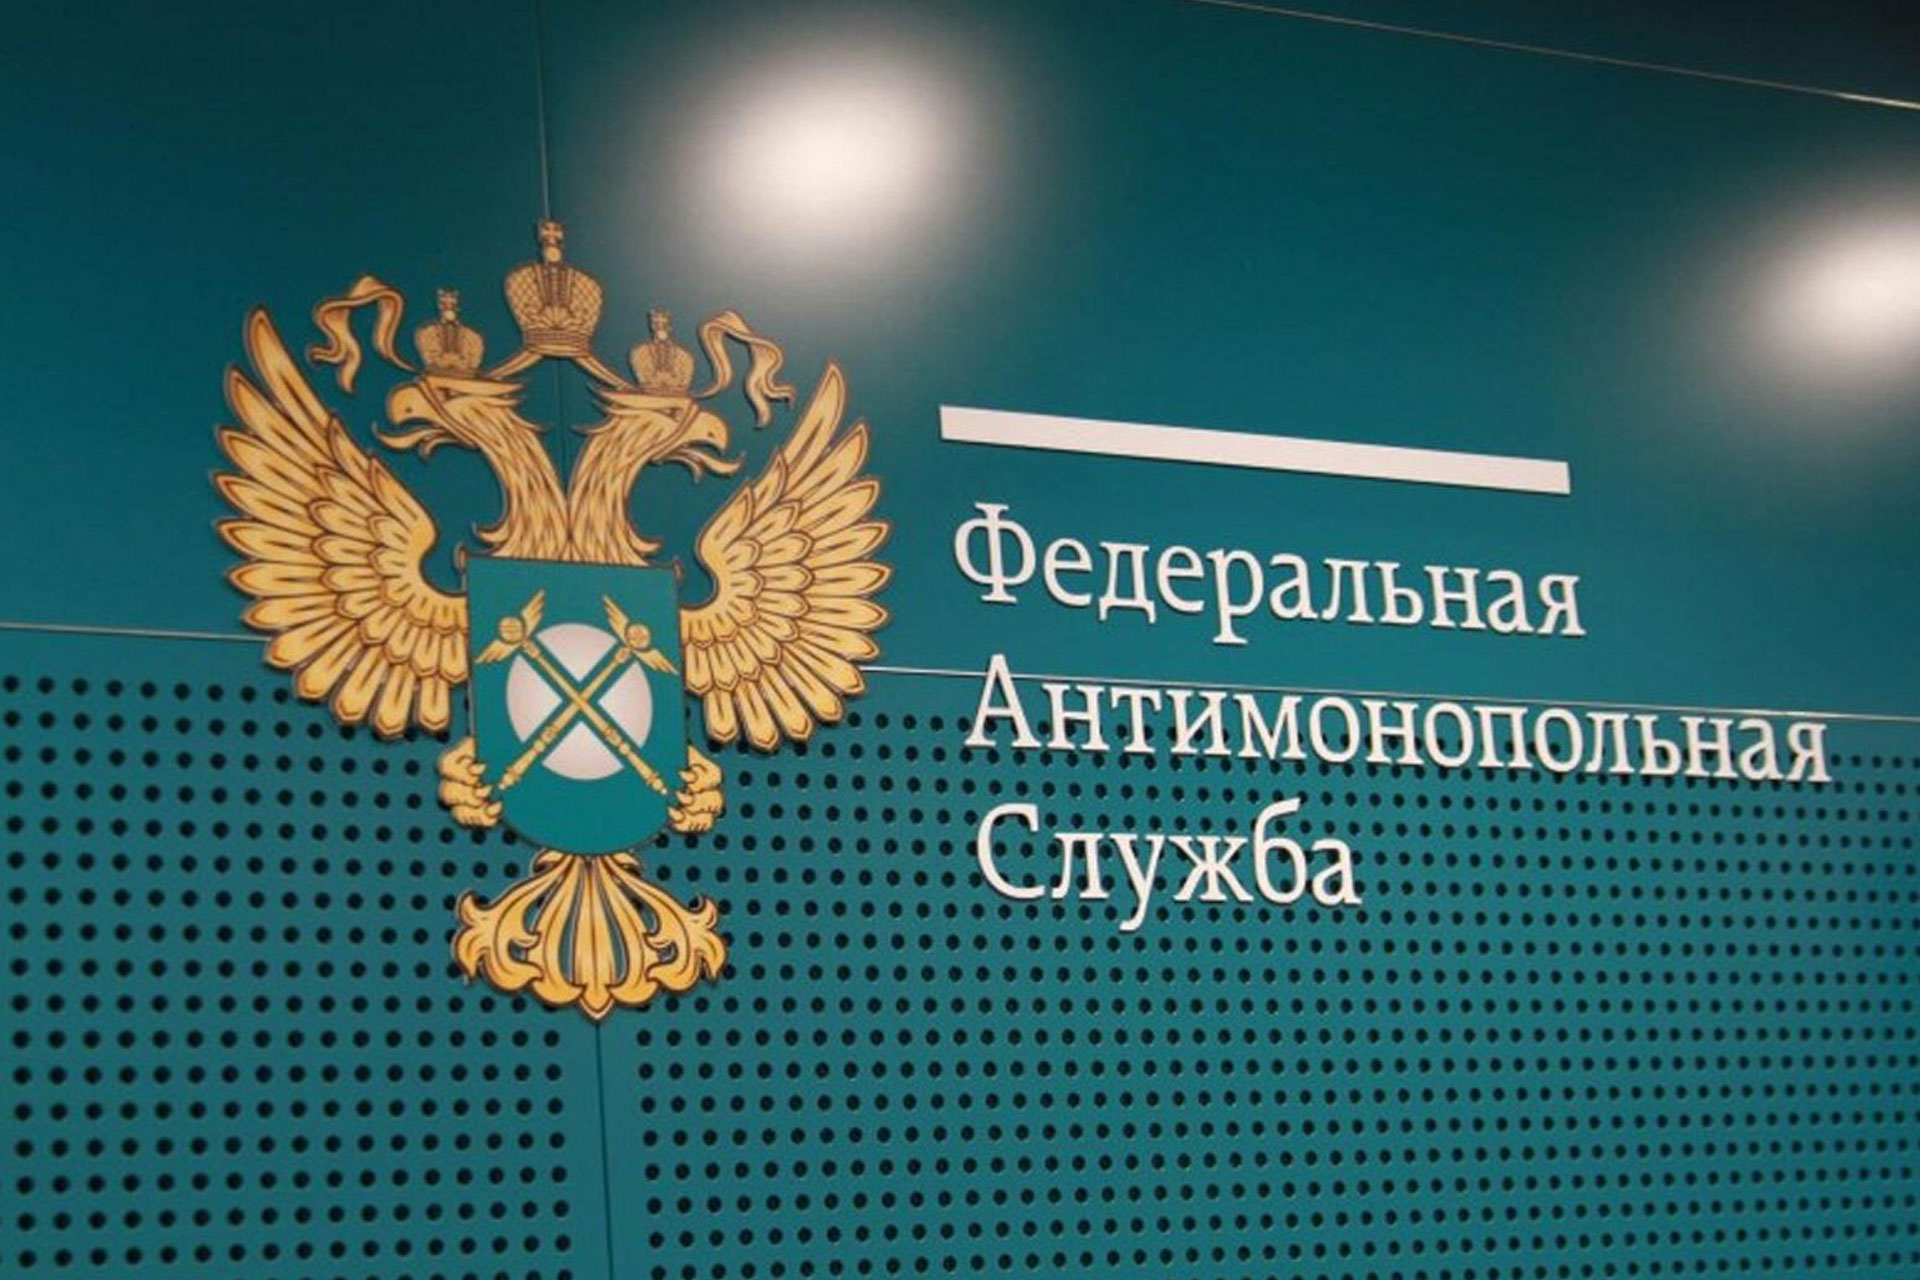 УФАС Подмосковья выявило нарушение при проведении торгов в г.о. Красногорск